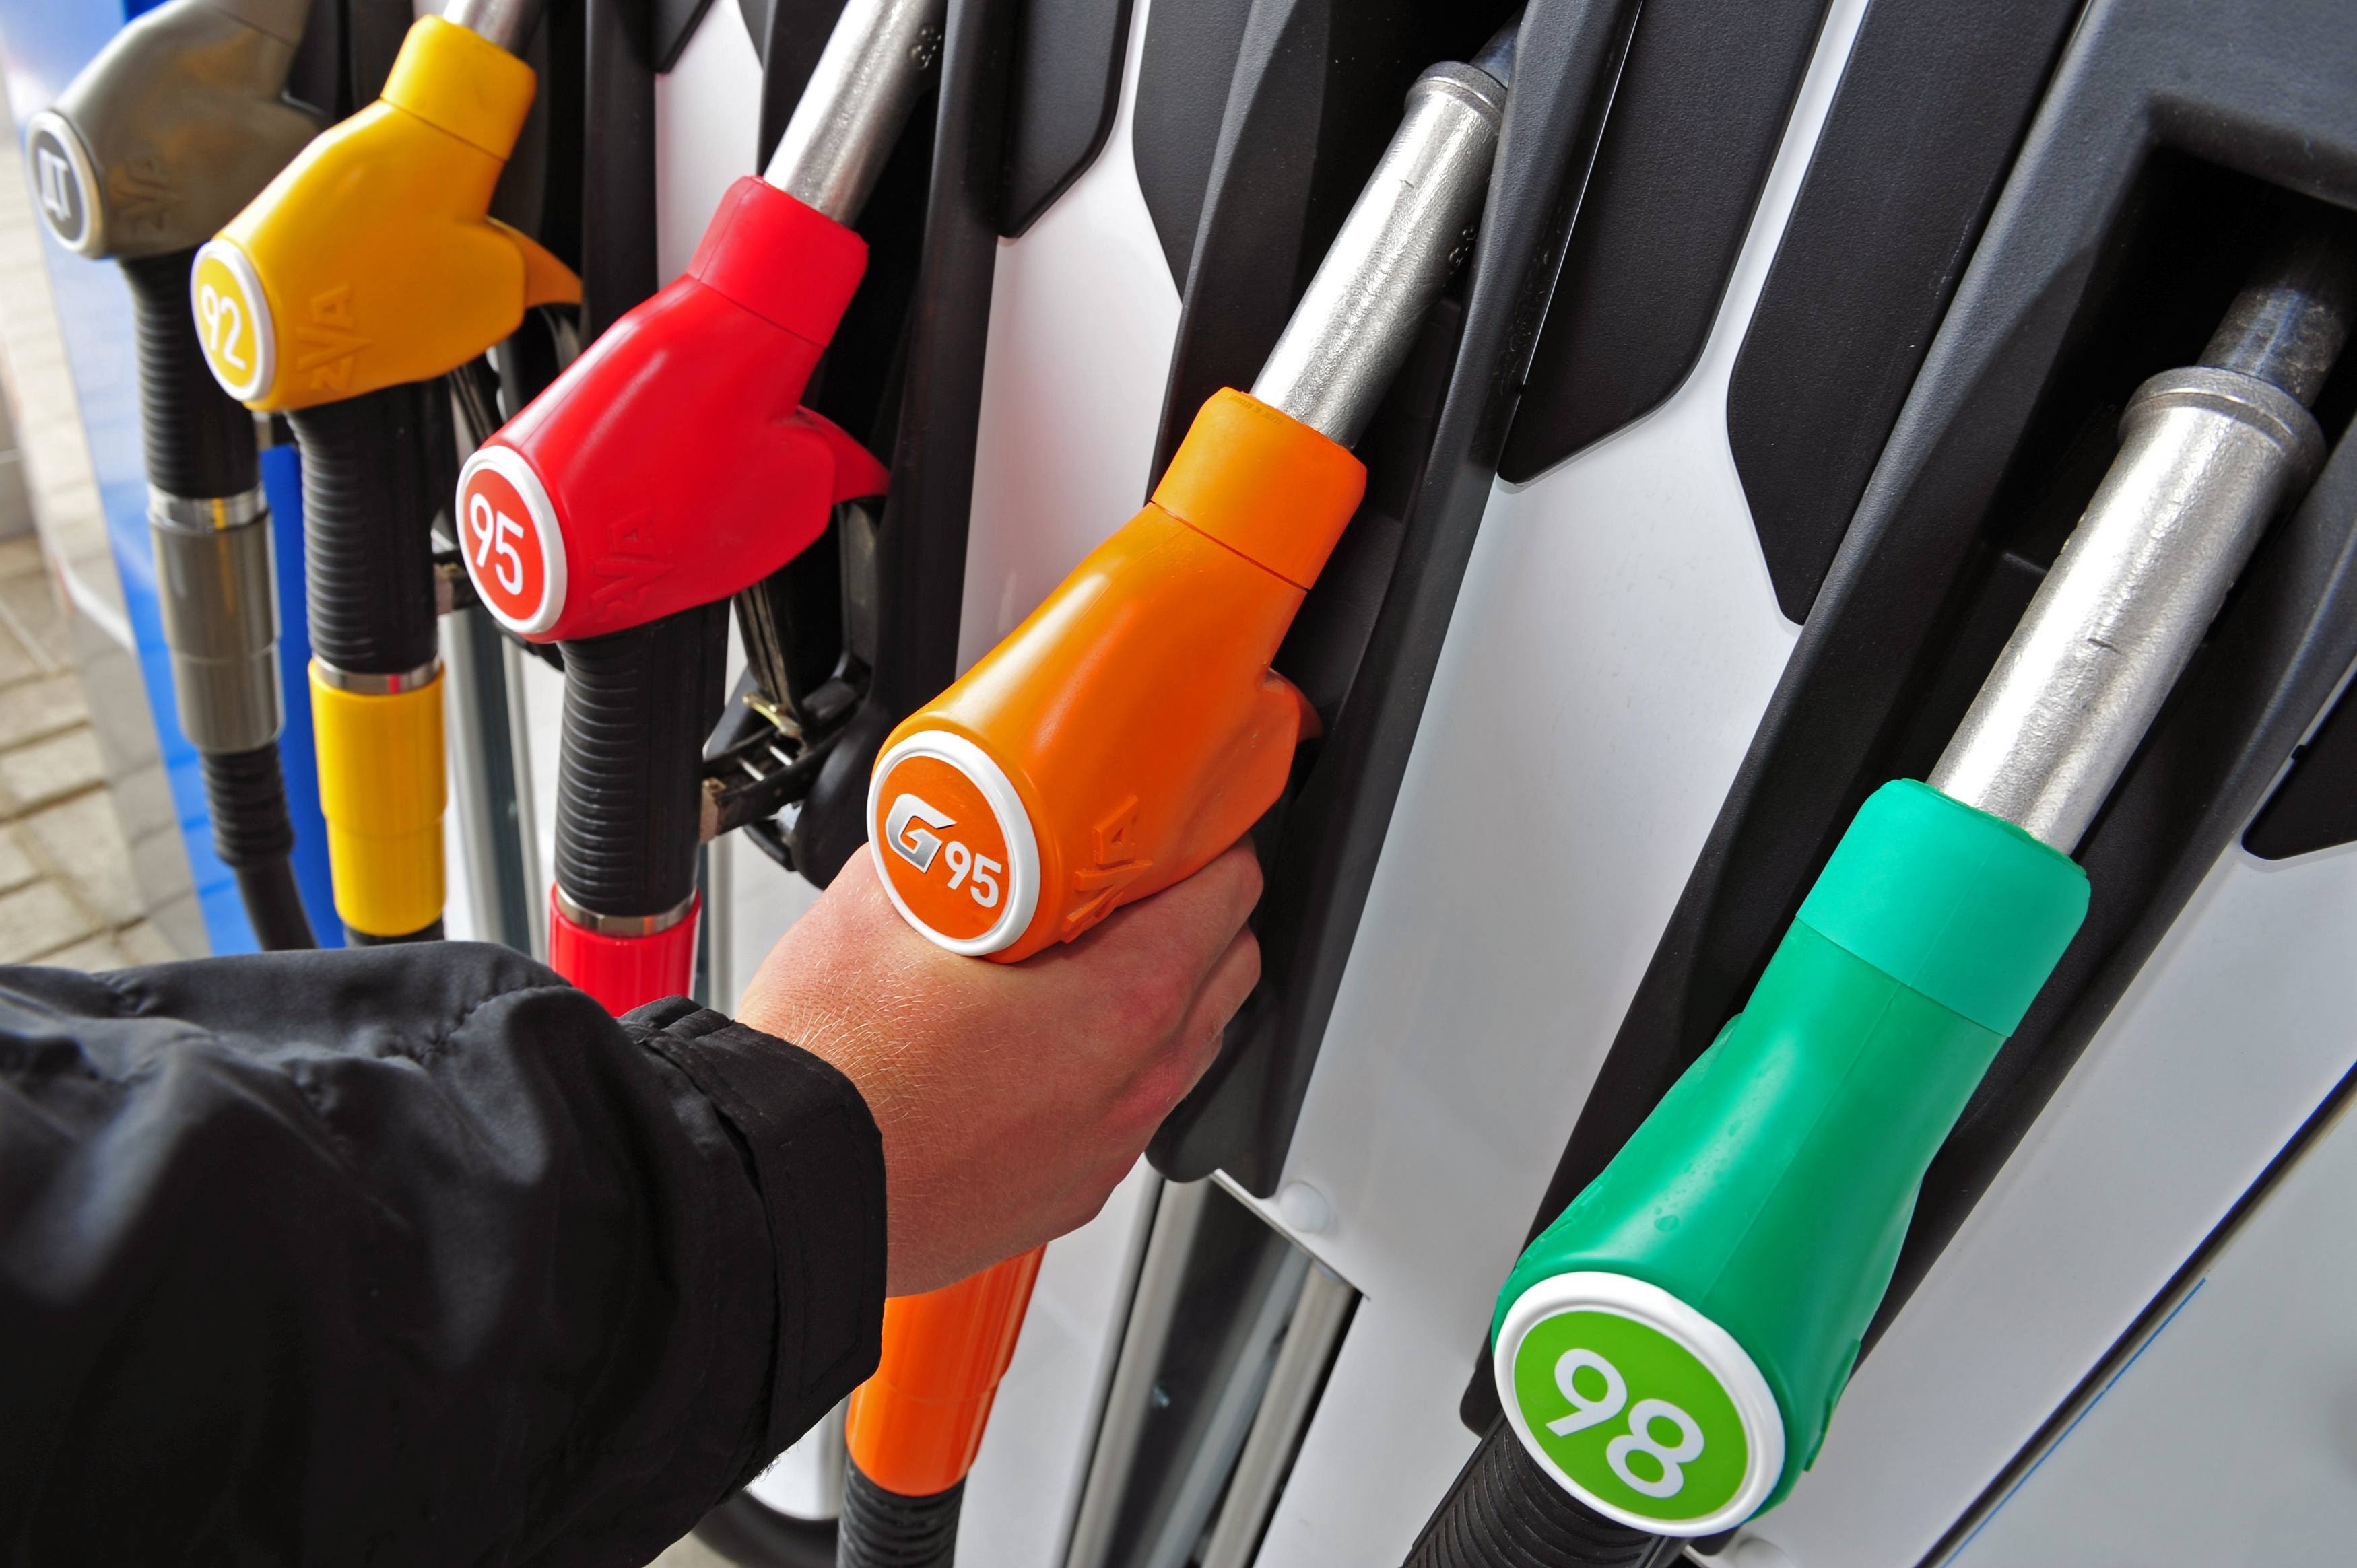 цены на бензин 2019